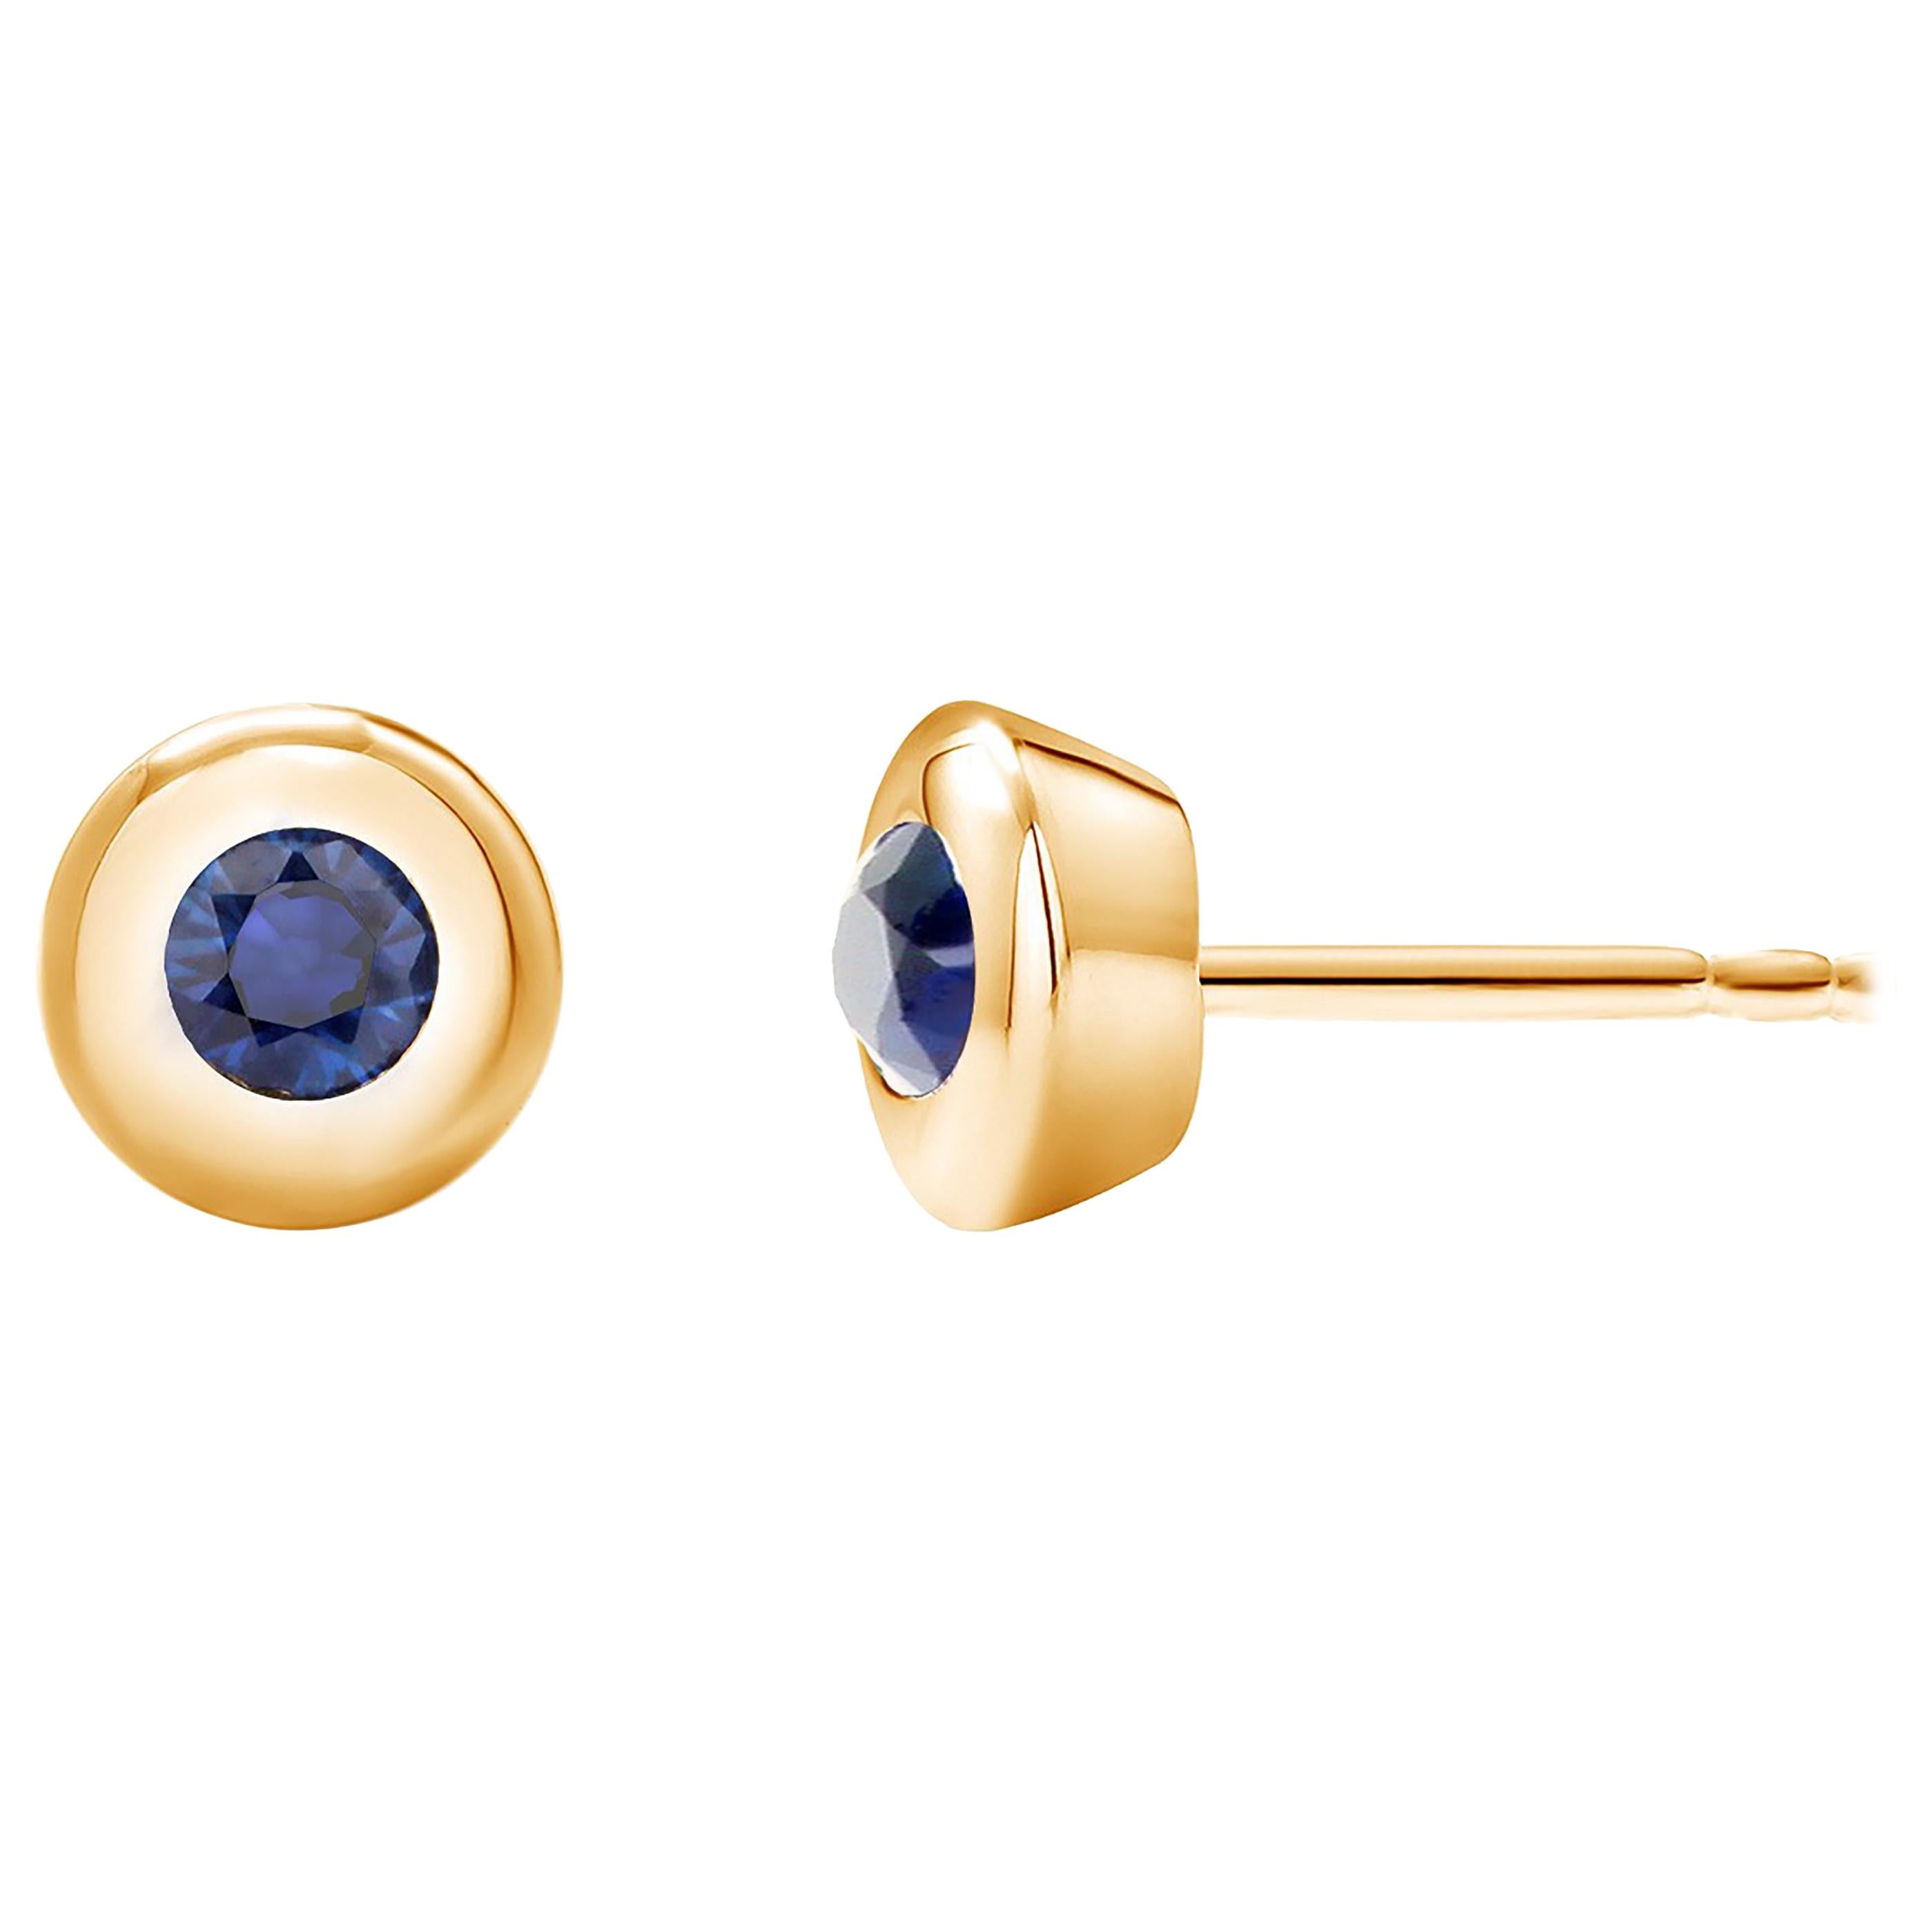 Yellow Gold Bezel Set Sapphire Stud Earrings Weighing 0.30 Carat